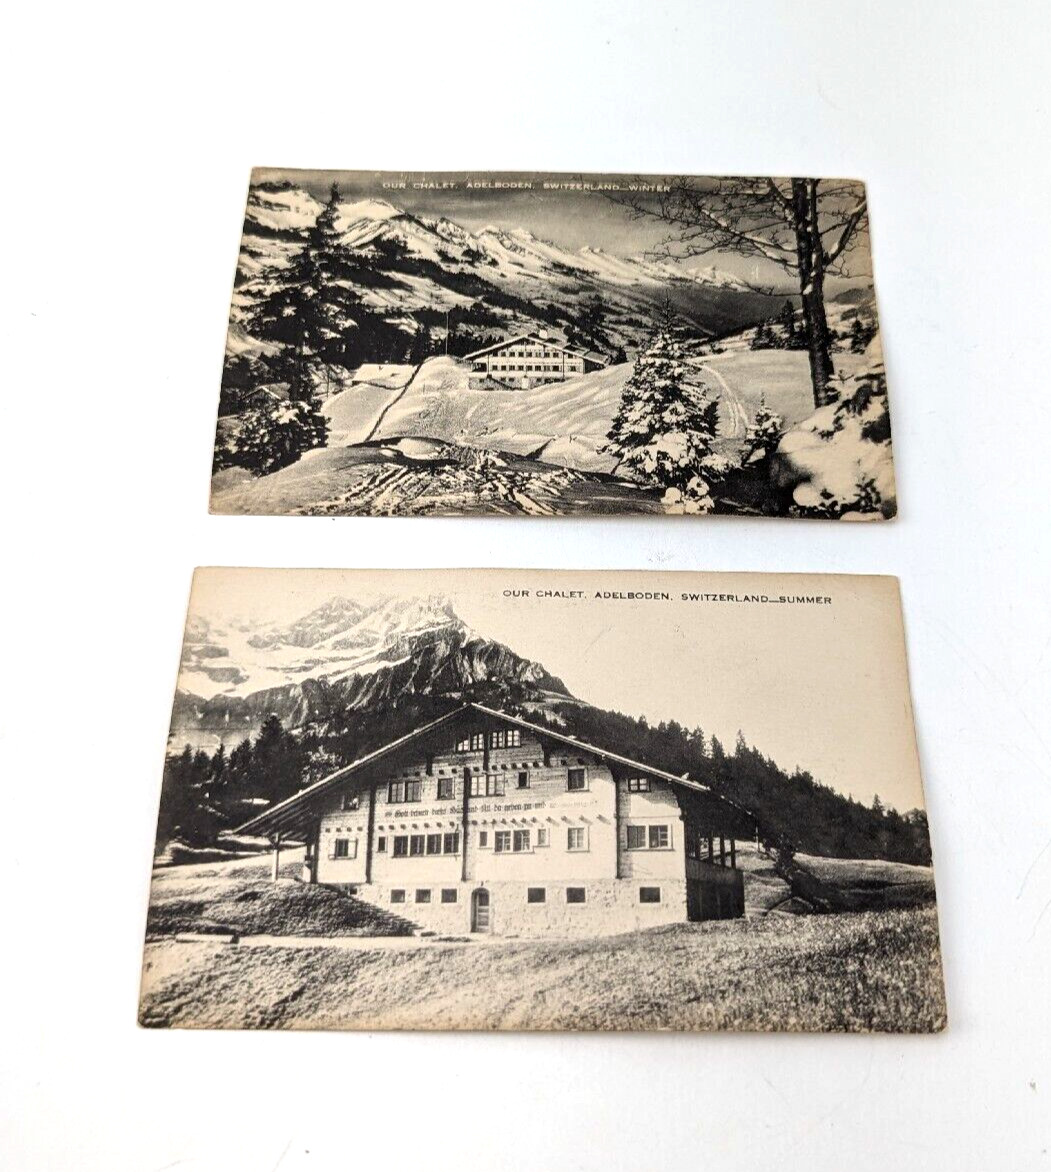 2x Vintage Artvue Our Chalet Adelboden Switzerland Summer / Winter Postcard #1E